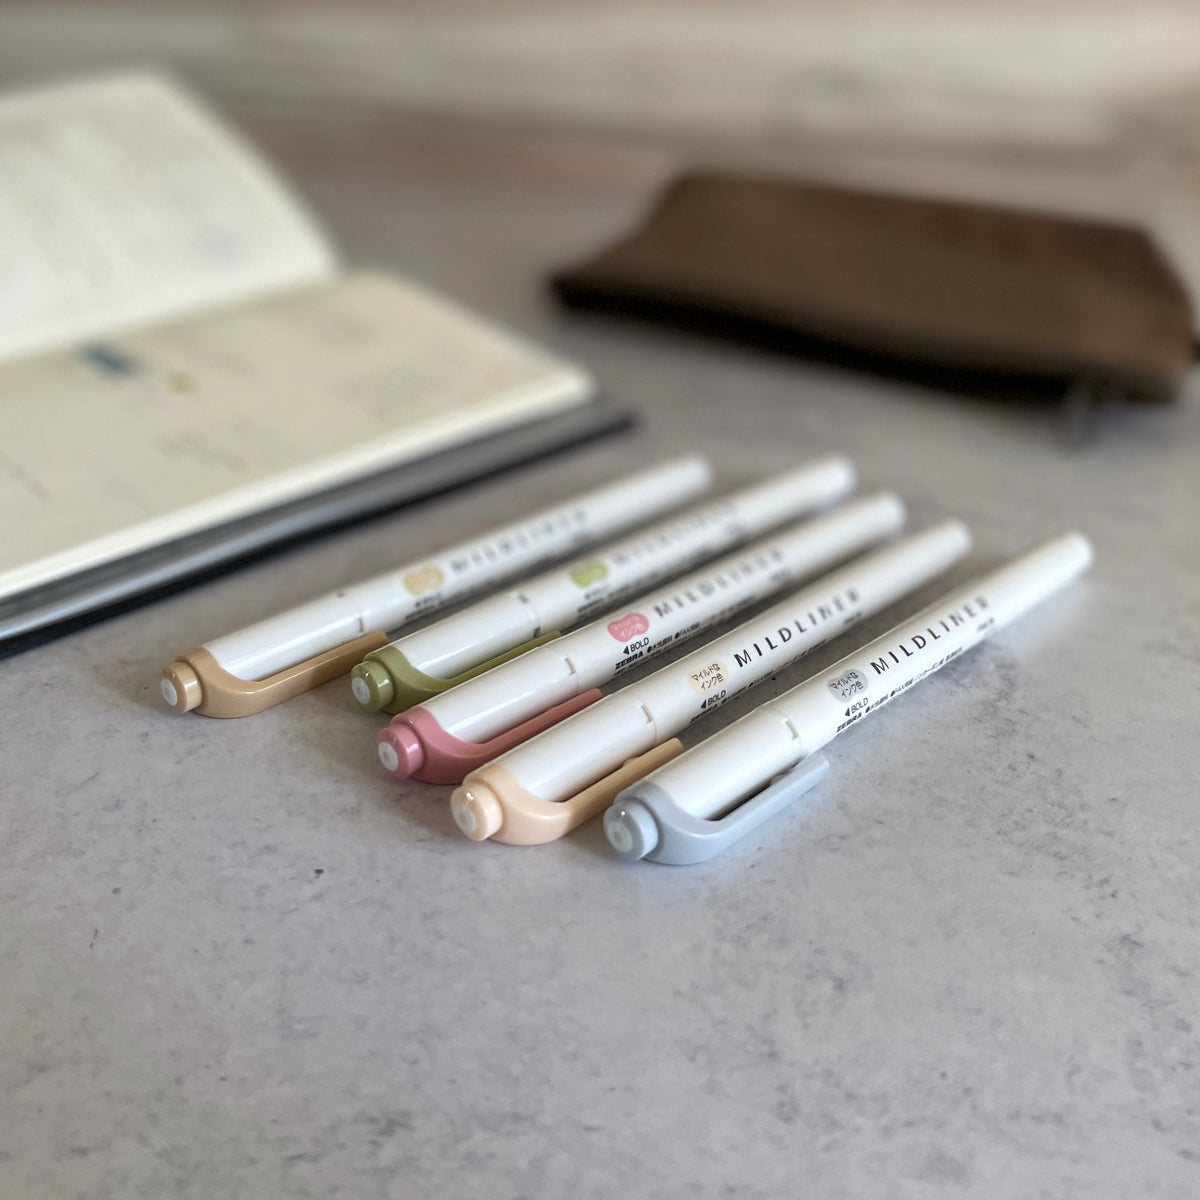 [Mildliner] Highlighter Pen "Natural" (set of 5 colors)